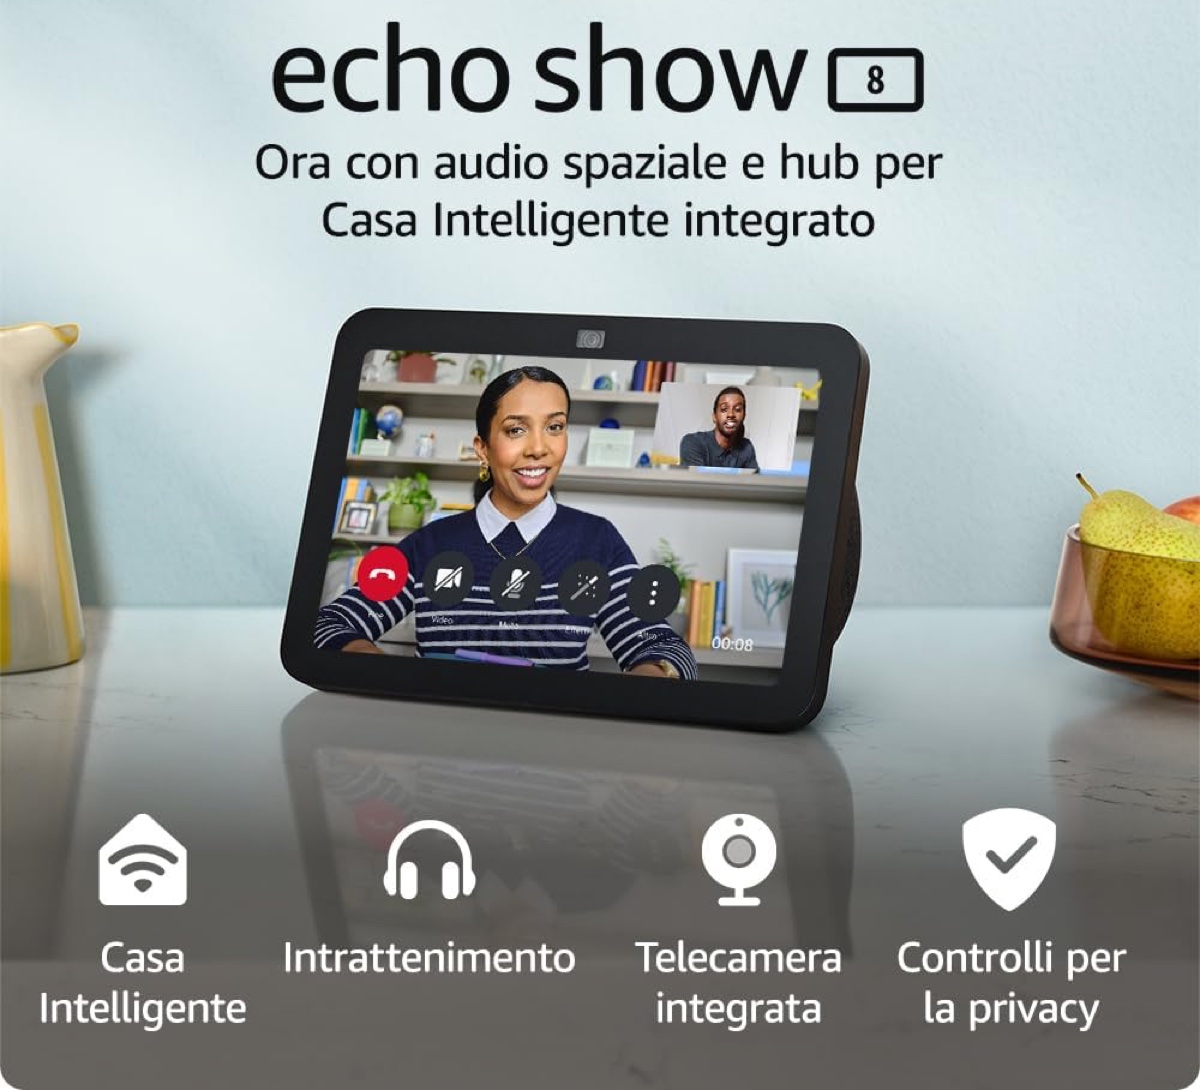 Nuovo Amazon Echo Show 8 disponibile in Italia